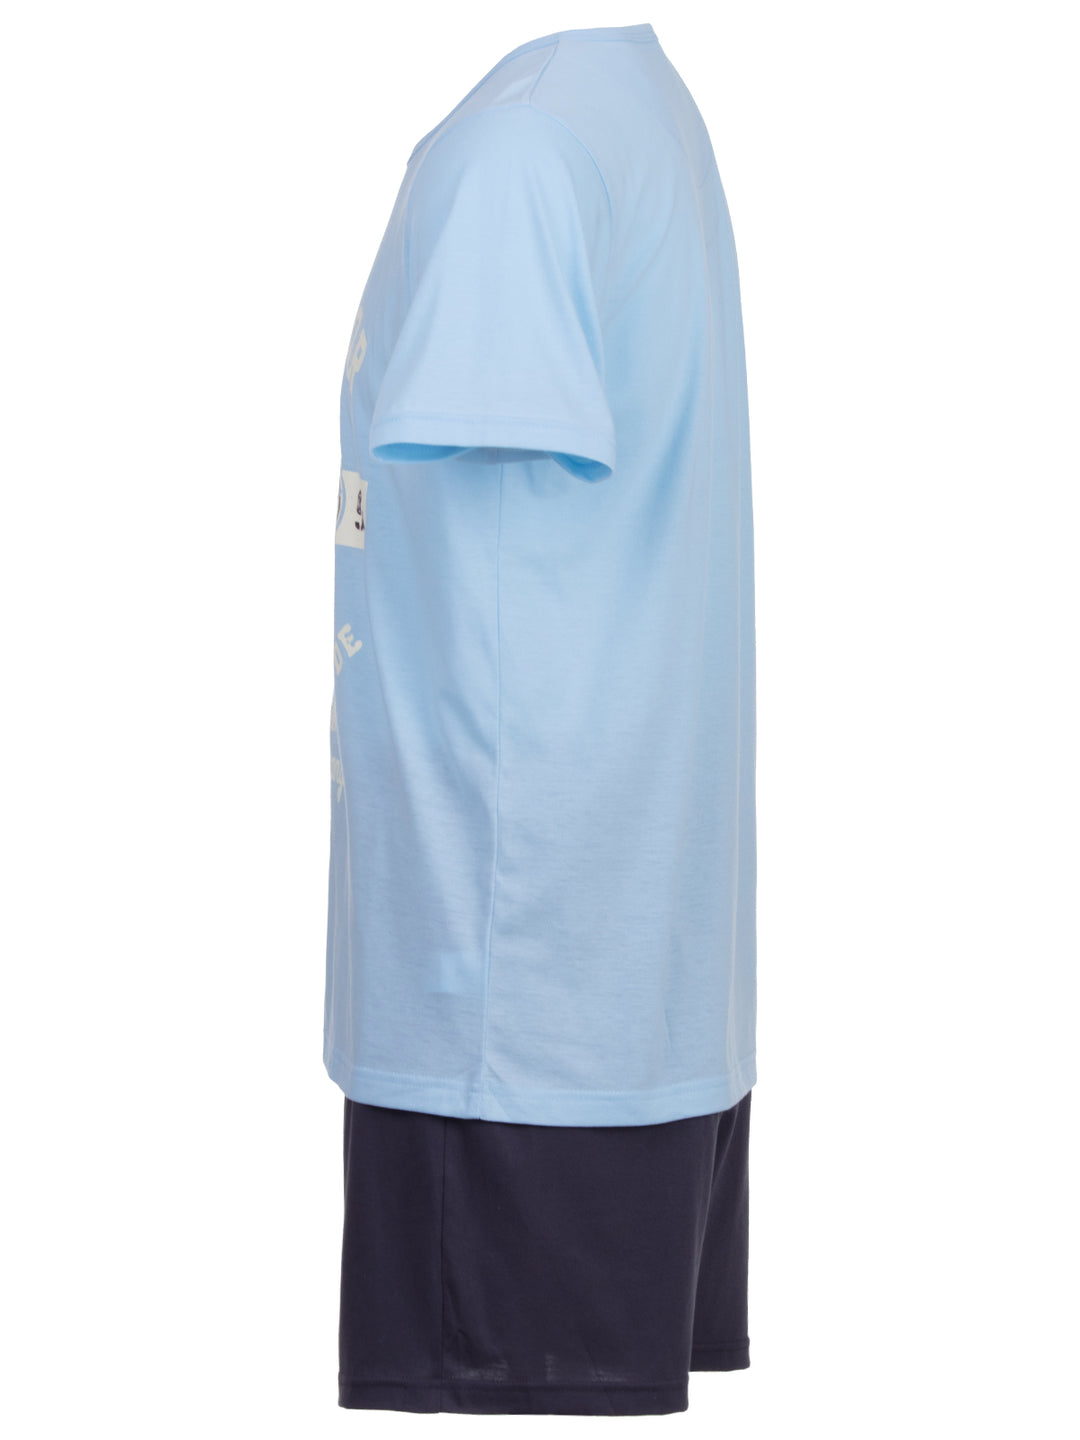 Pyjama Set Shorty - Vintage Blaue Shorts